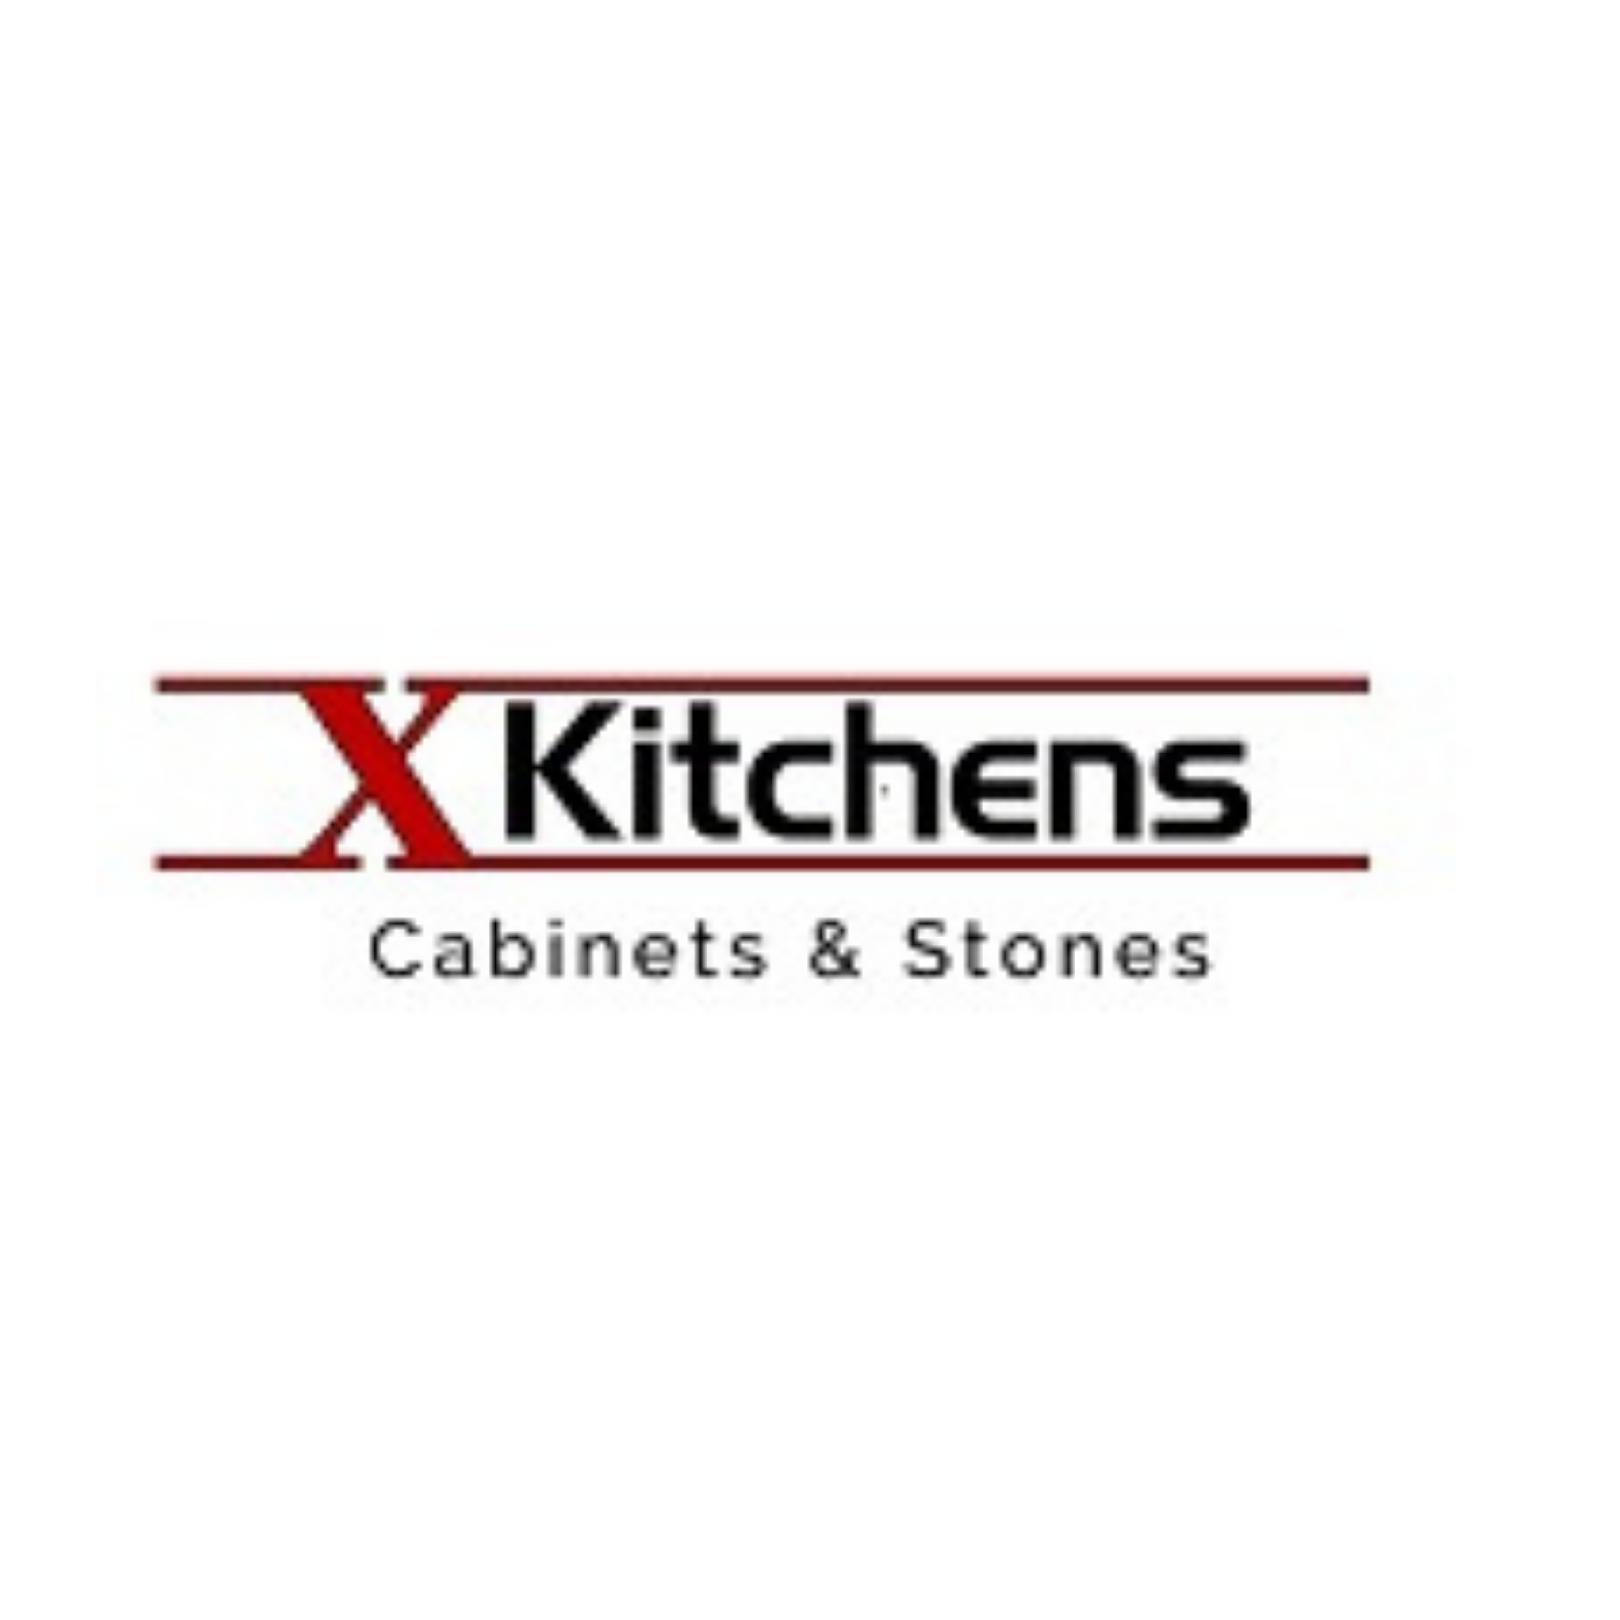 X Kitchens